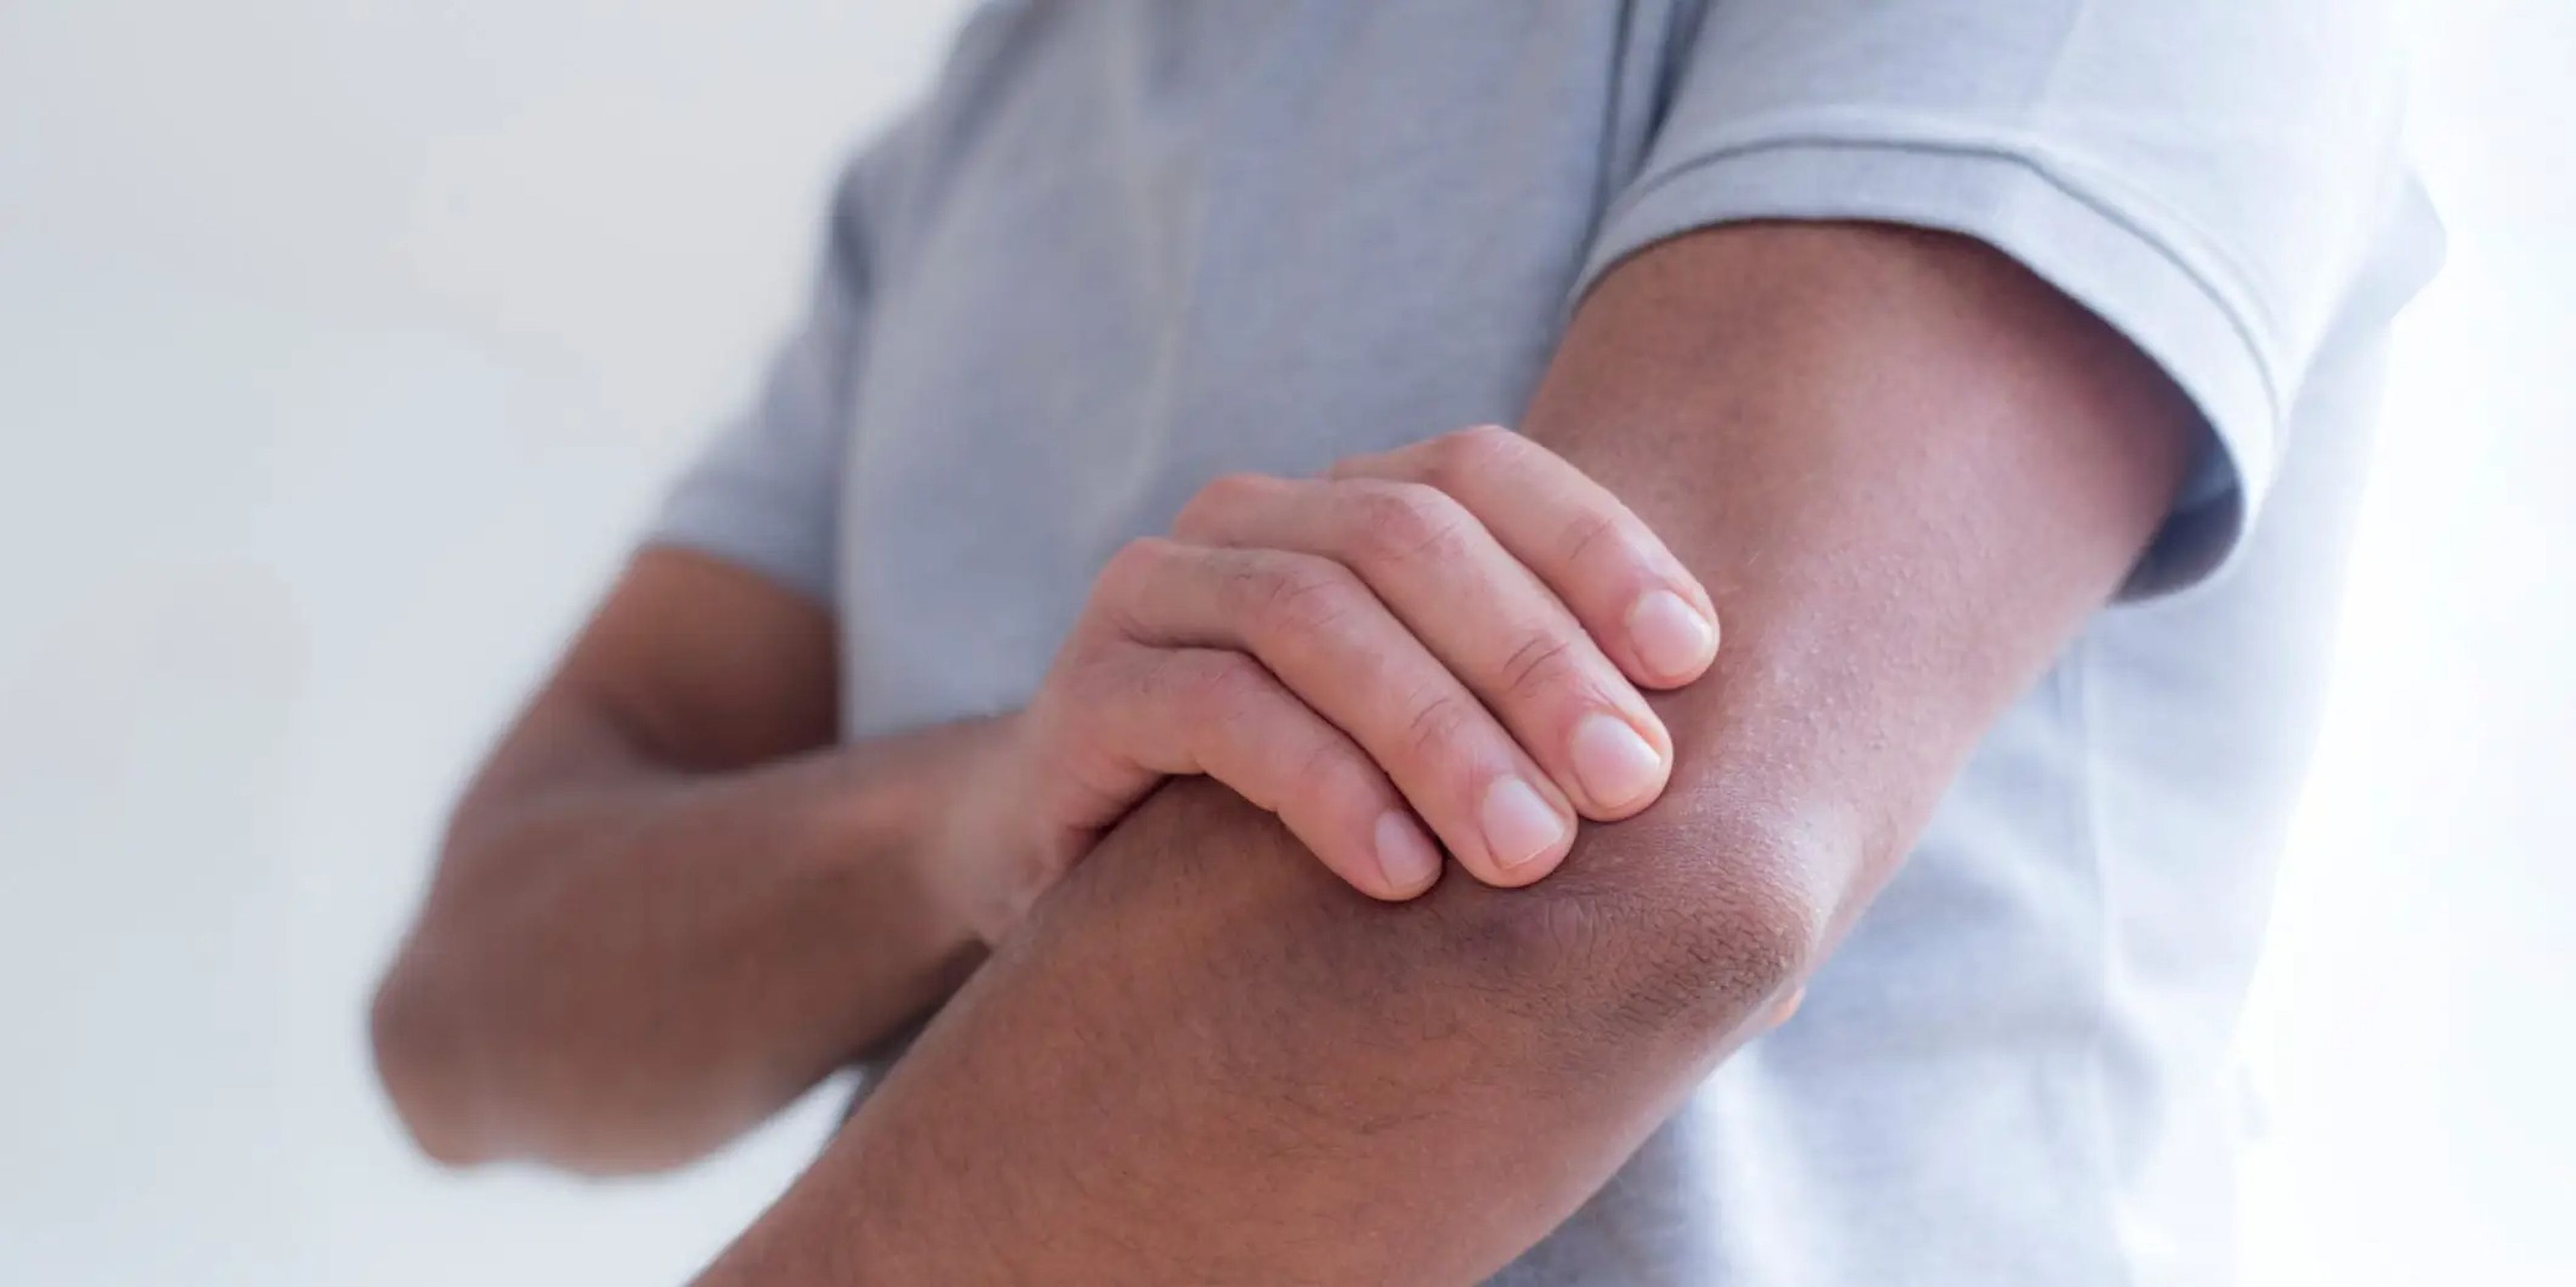 El dolor, la hinchazón y la inflamación del brazo izquierdo pueden deberse a un esguince o distensión muscular.